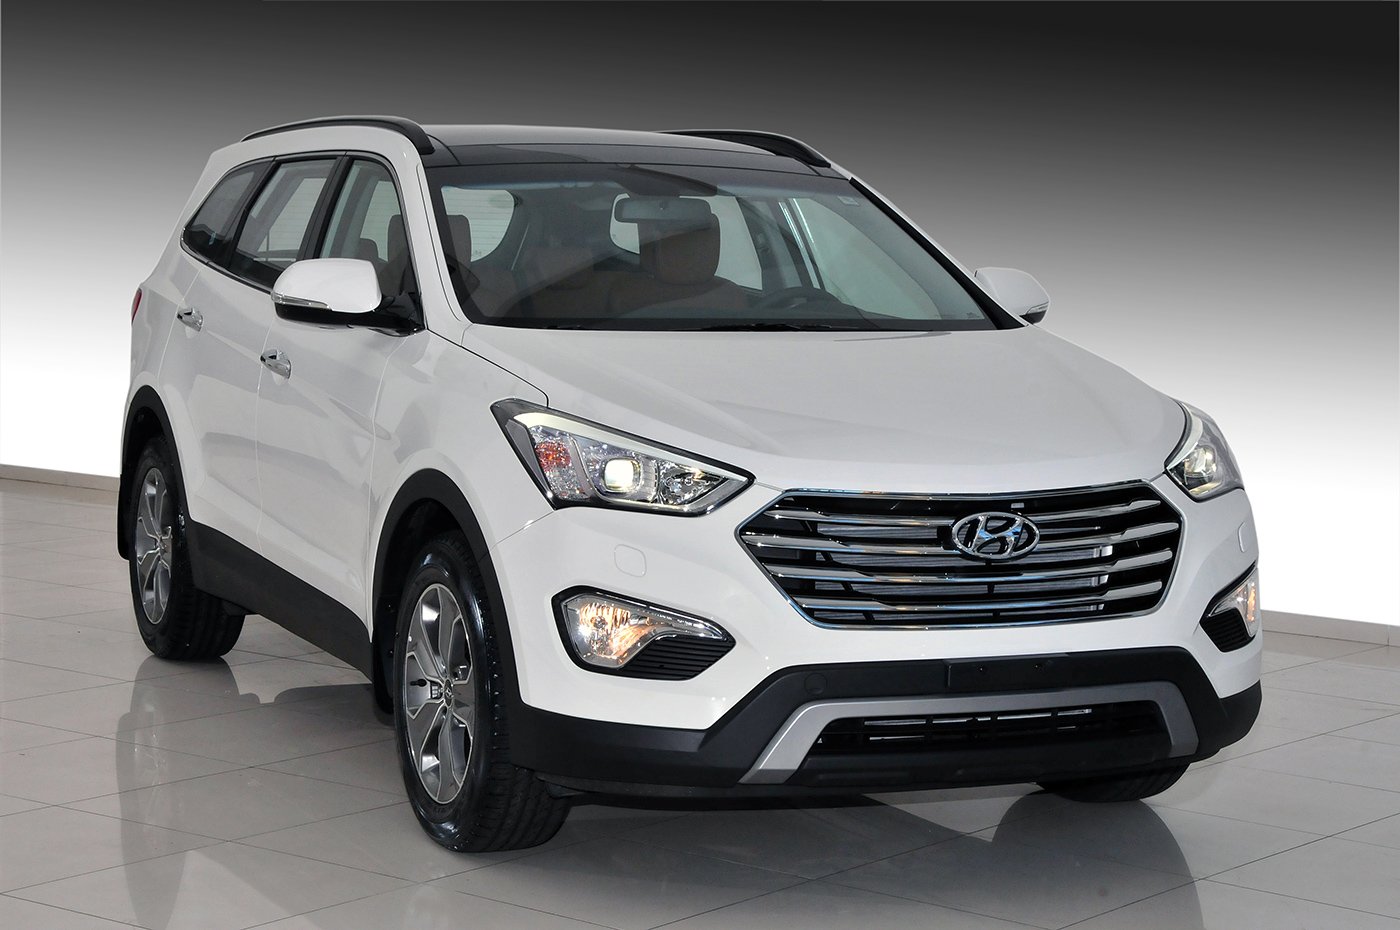 Hyundai Grand Santa Fe